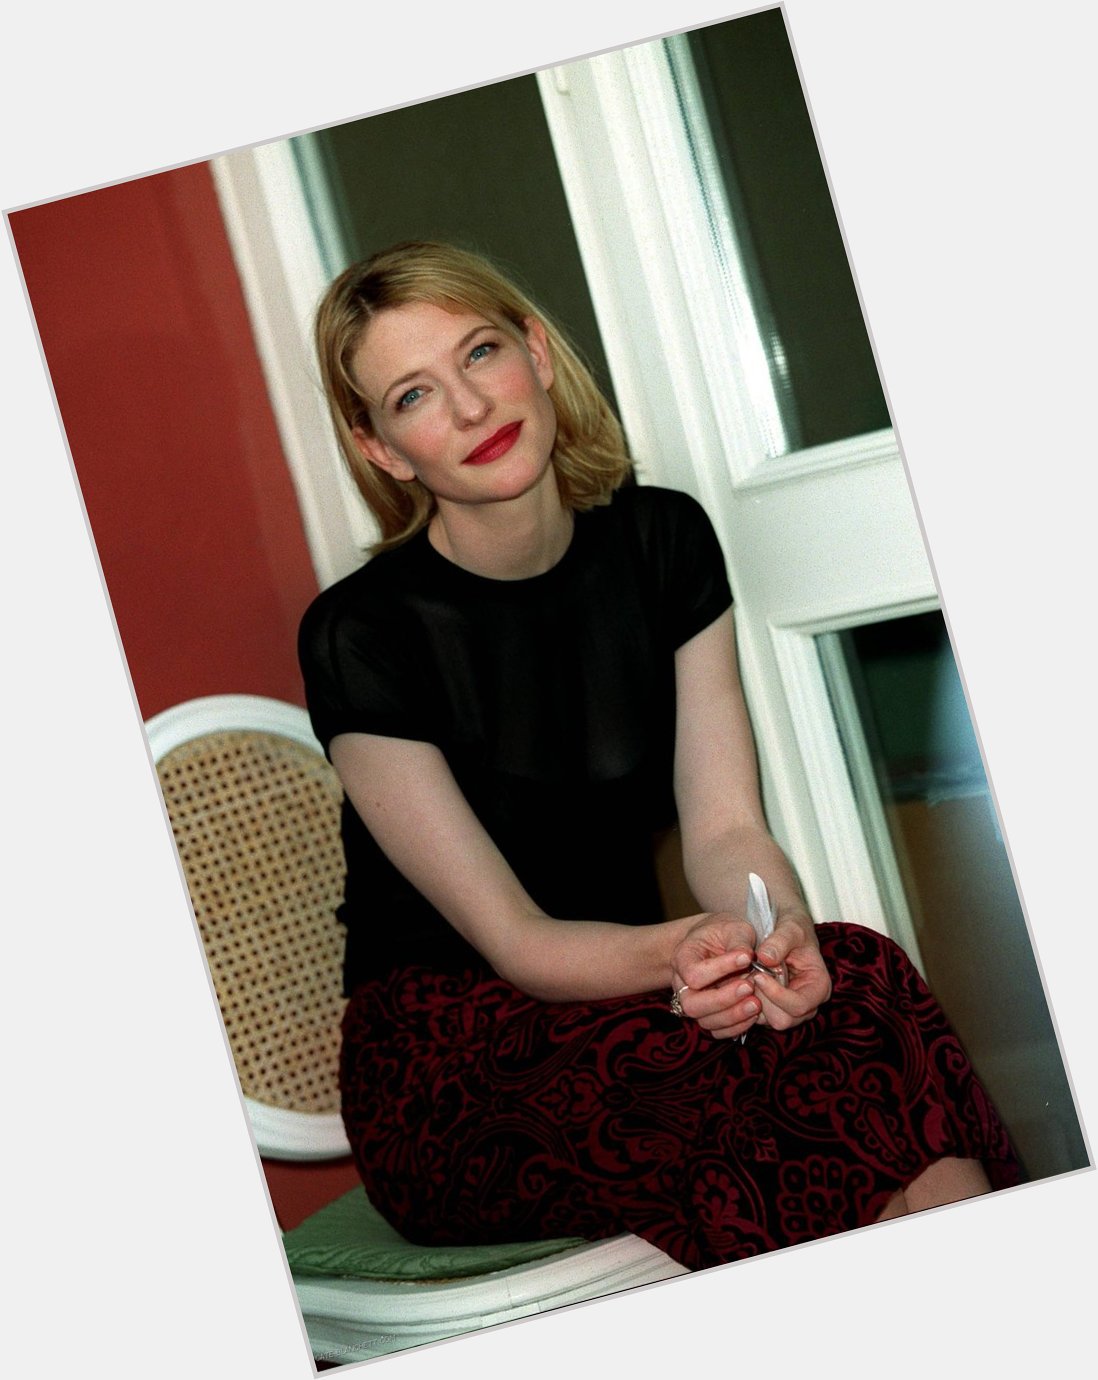 Cate Blanchett, Elizabeth Photocall 1998. 
Happy Birthday to my forever Loml!   